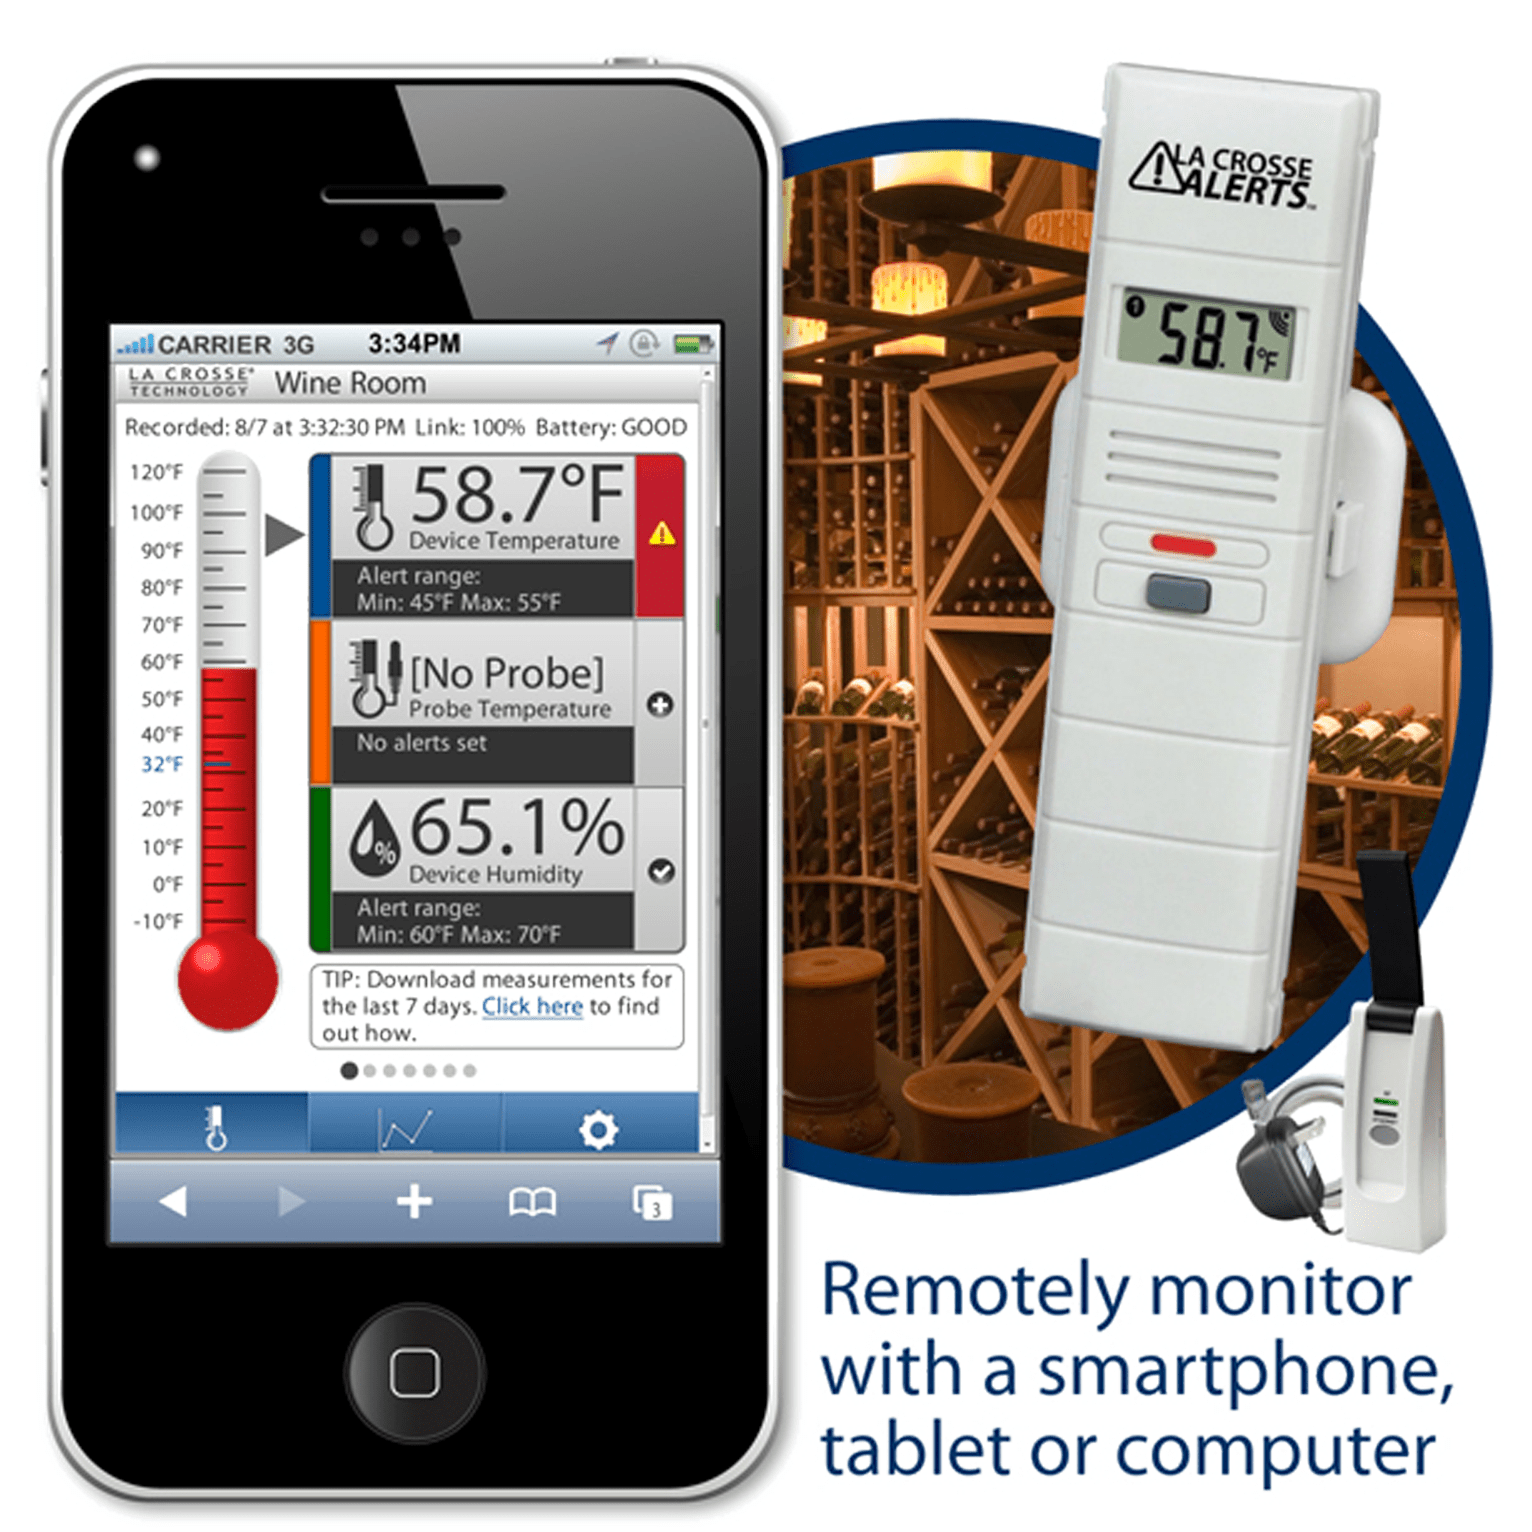 La Crosse Remote Temperature & Humidity Monitor For Wine Cellar